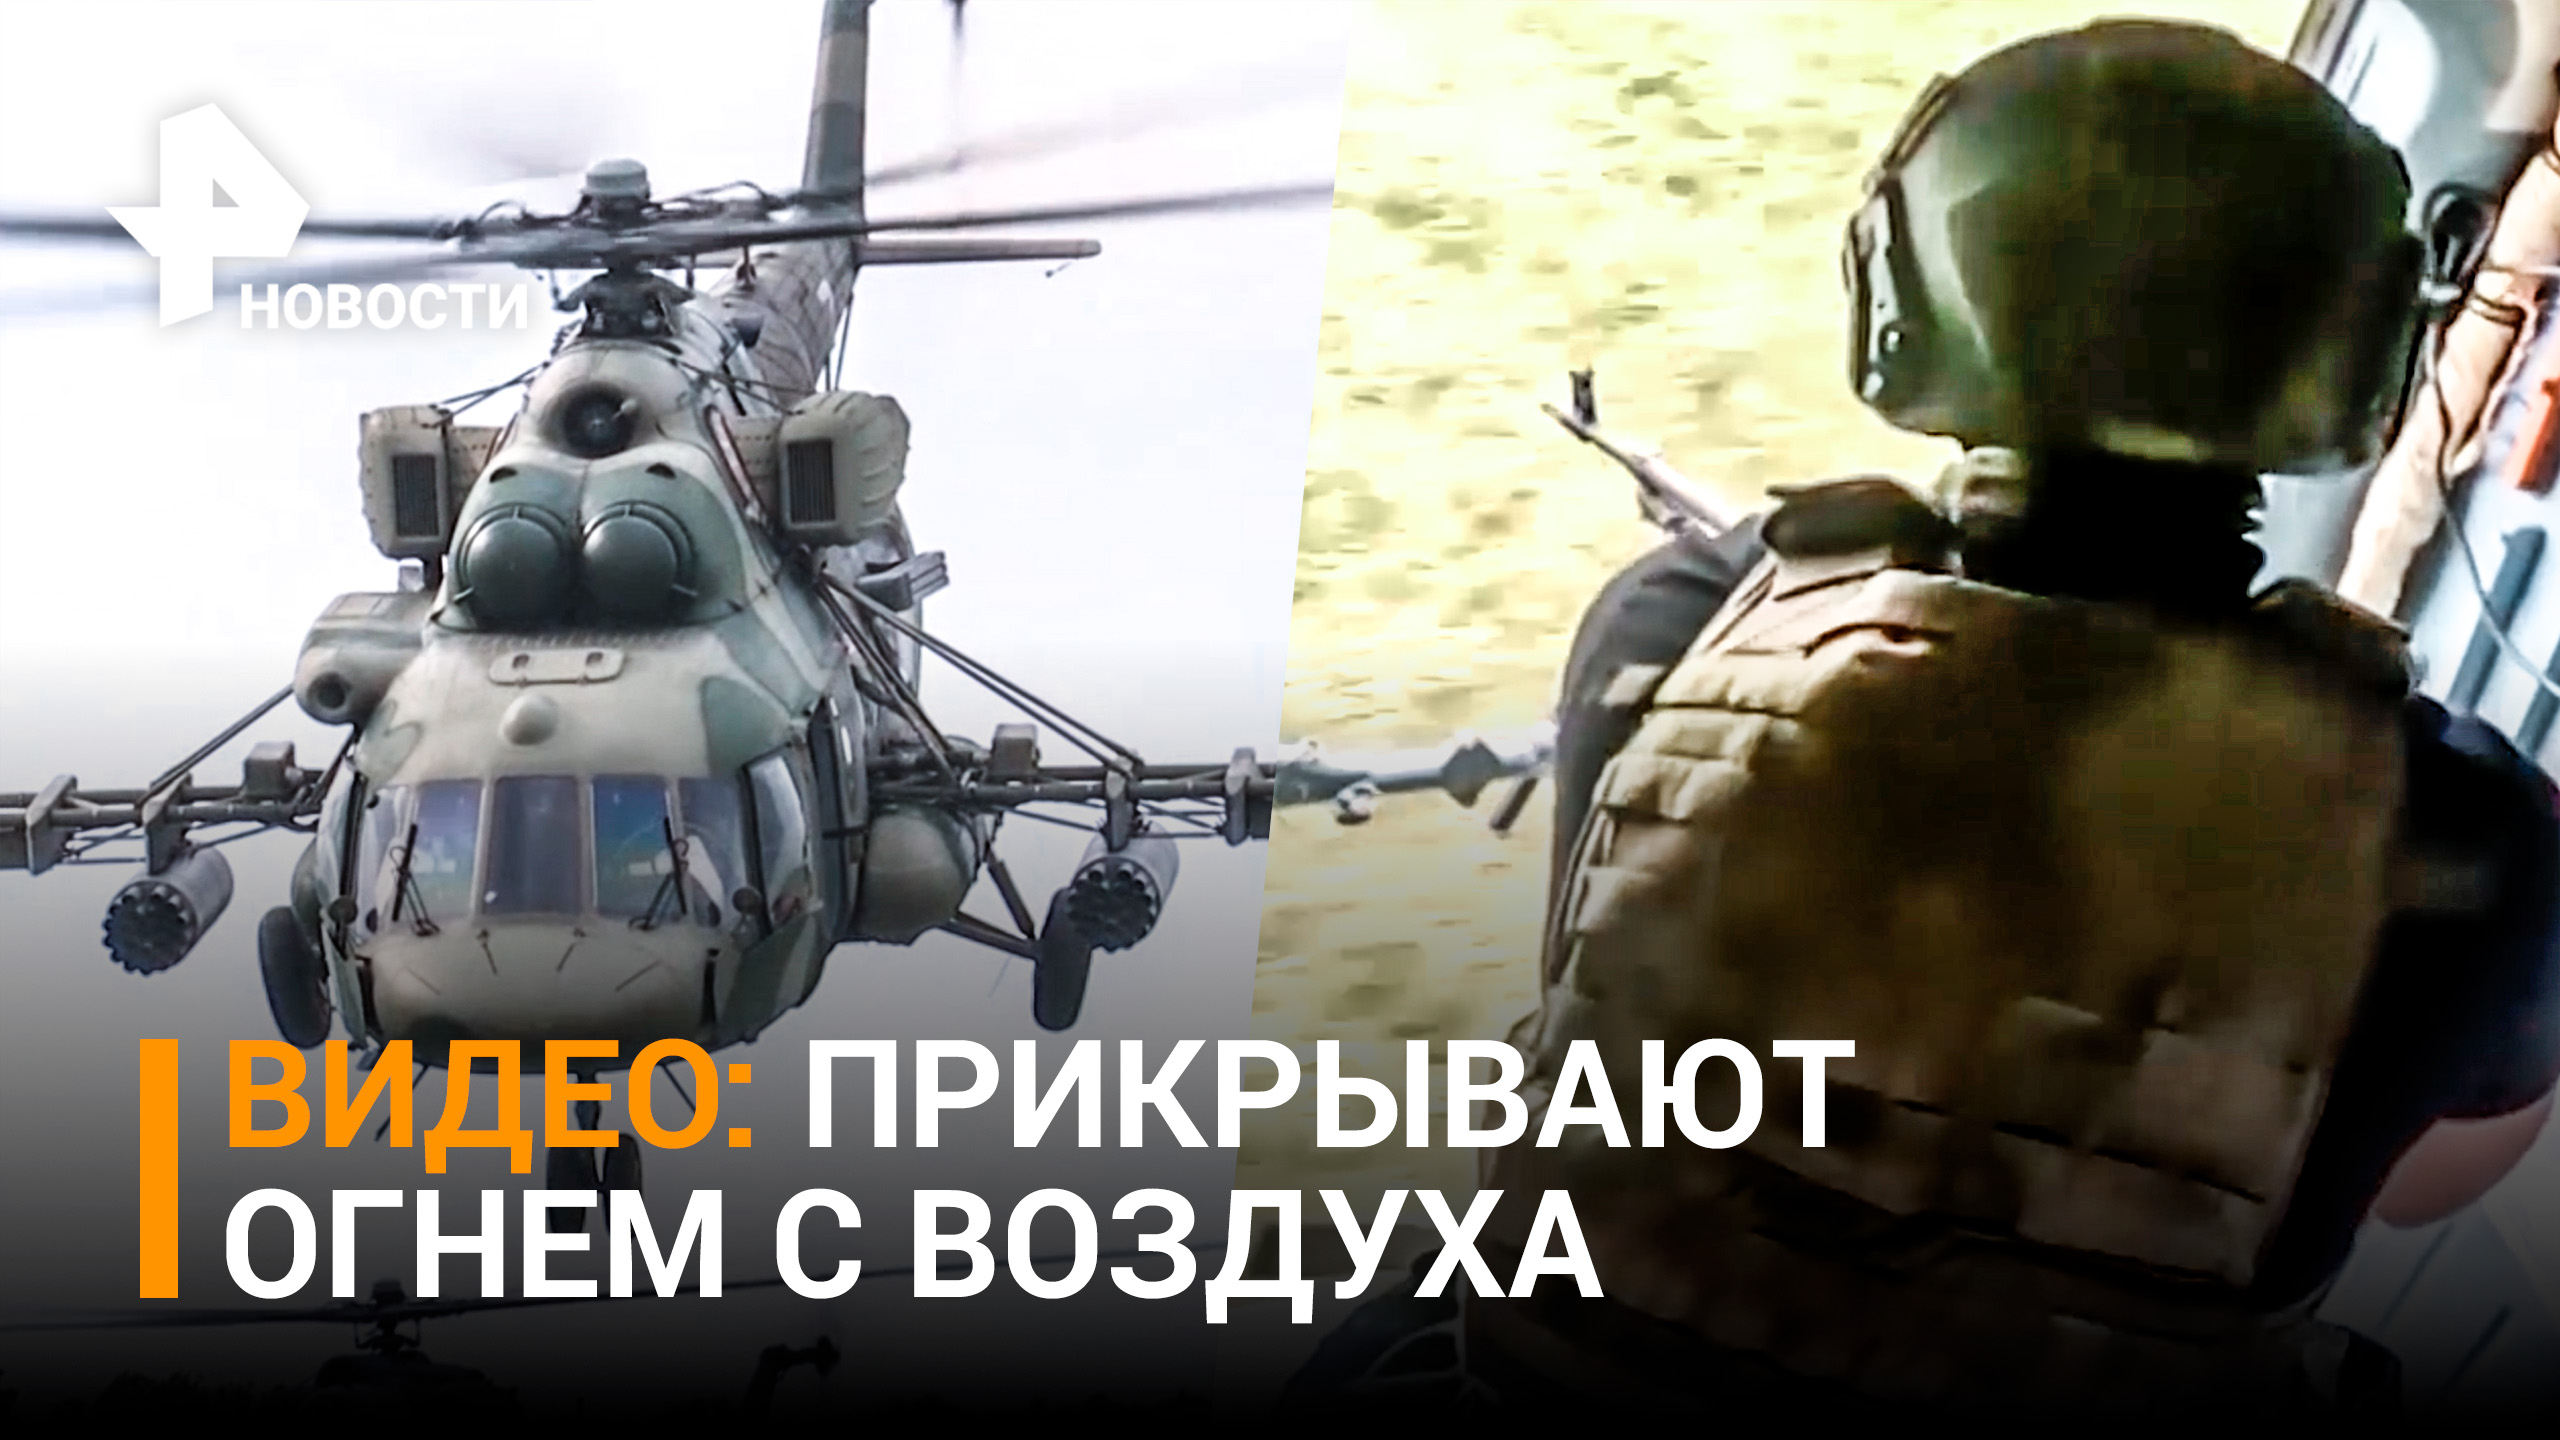 Работа группы огневого прикрытия армейской авиации РФ: видео Минобороны / РЕН Новости